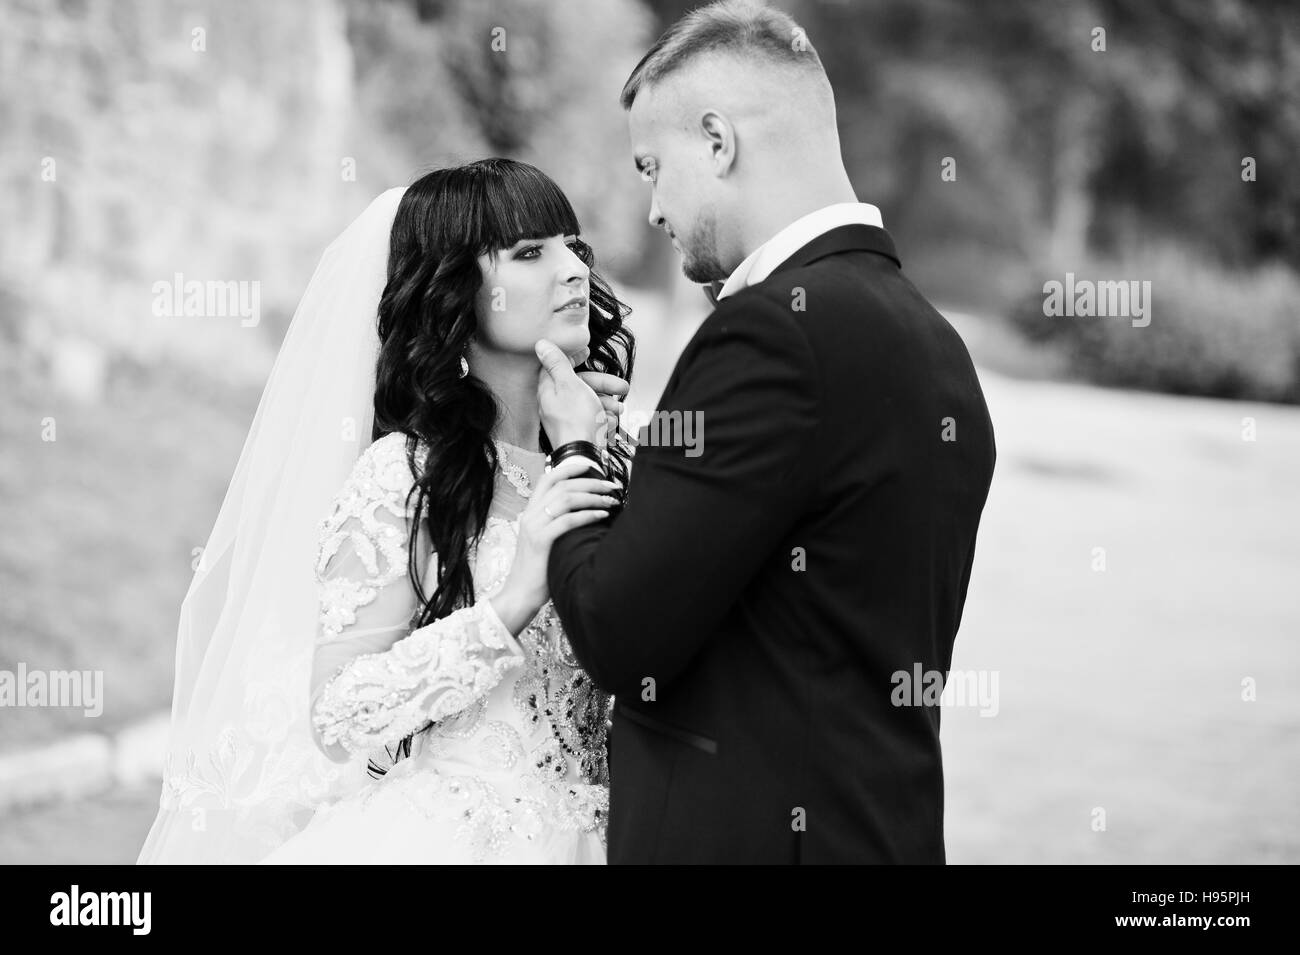 Close up portrait of stylish kissing wedding couple. Black and white photo Stock Photo